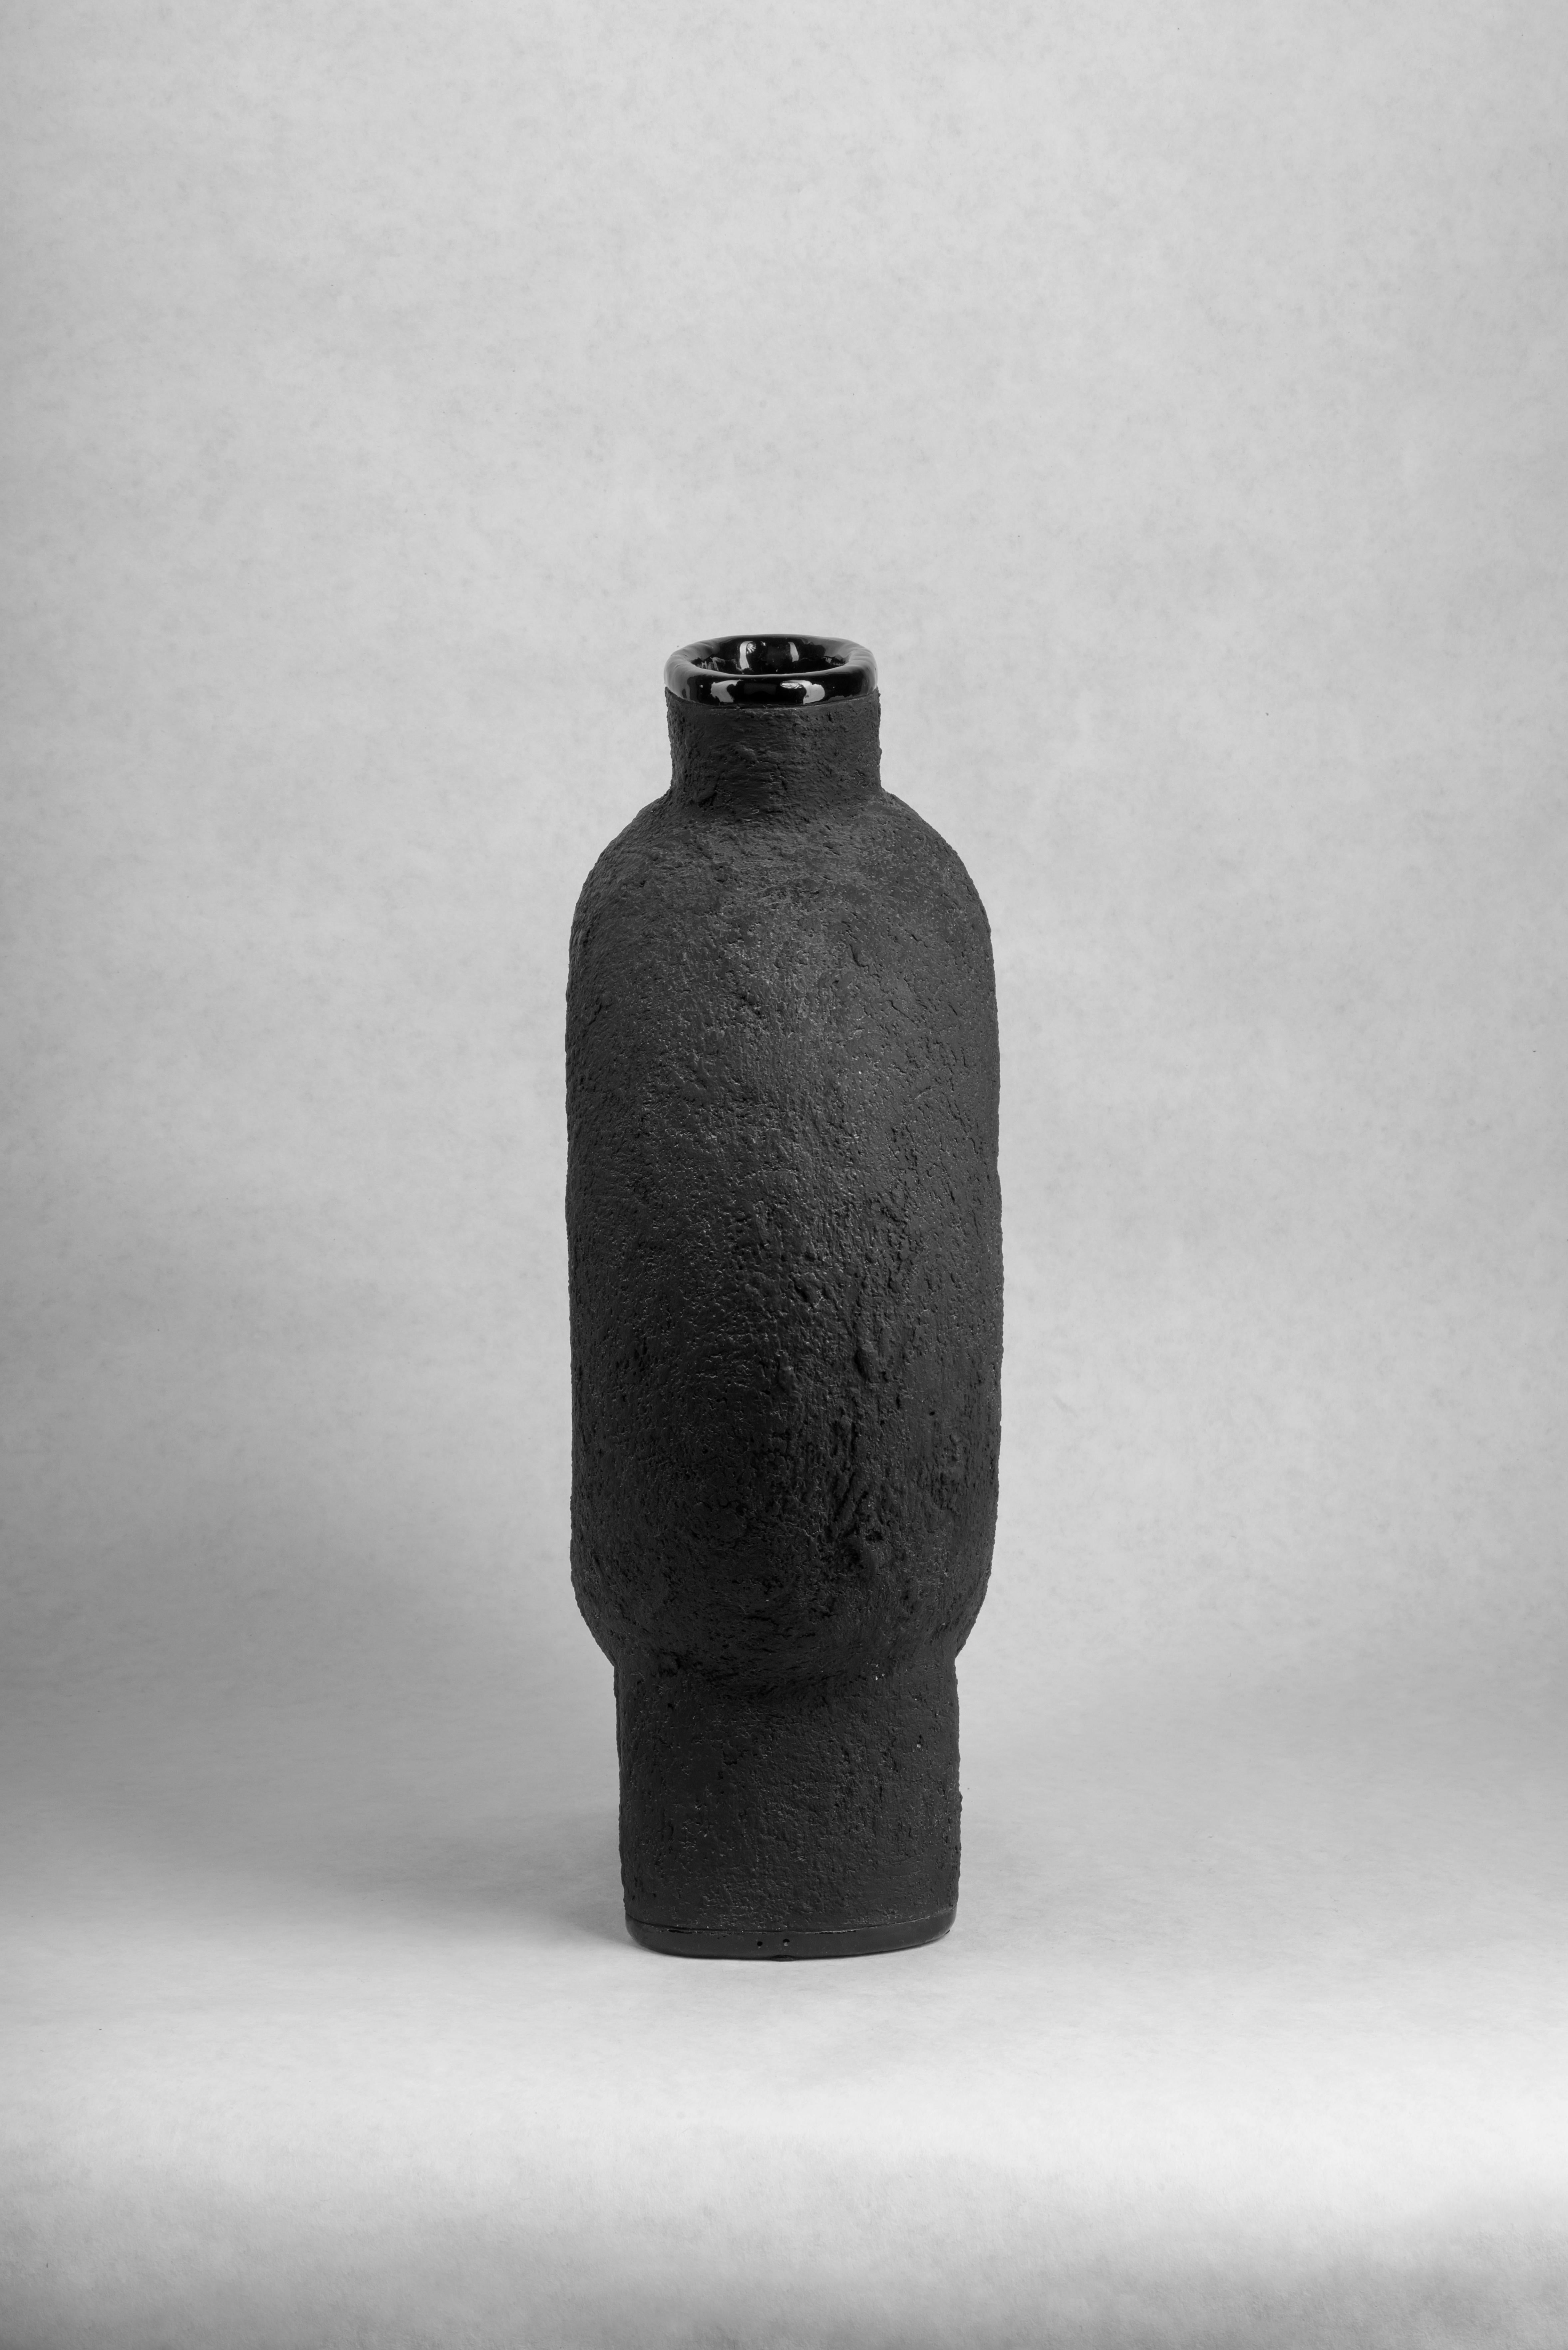 Two Legs Vase aus Keramik von Faina.
Design: Victoriya Yakusha..,
MATERIAL: MATERIAL: Ton/Keramik.
Abmessungen: 43 x 20 x H 50 cm.


Die Vase ist Teil einer Serie von 5 Vasen, der Satz von Vasen besteht aus:

1. Vase auf drei Beinen: Höhe: 500 x